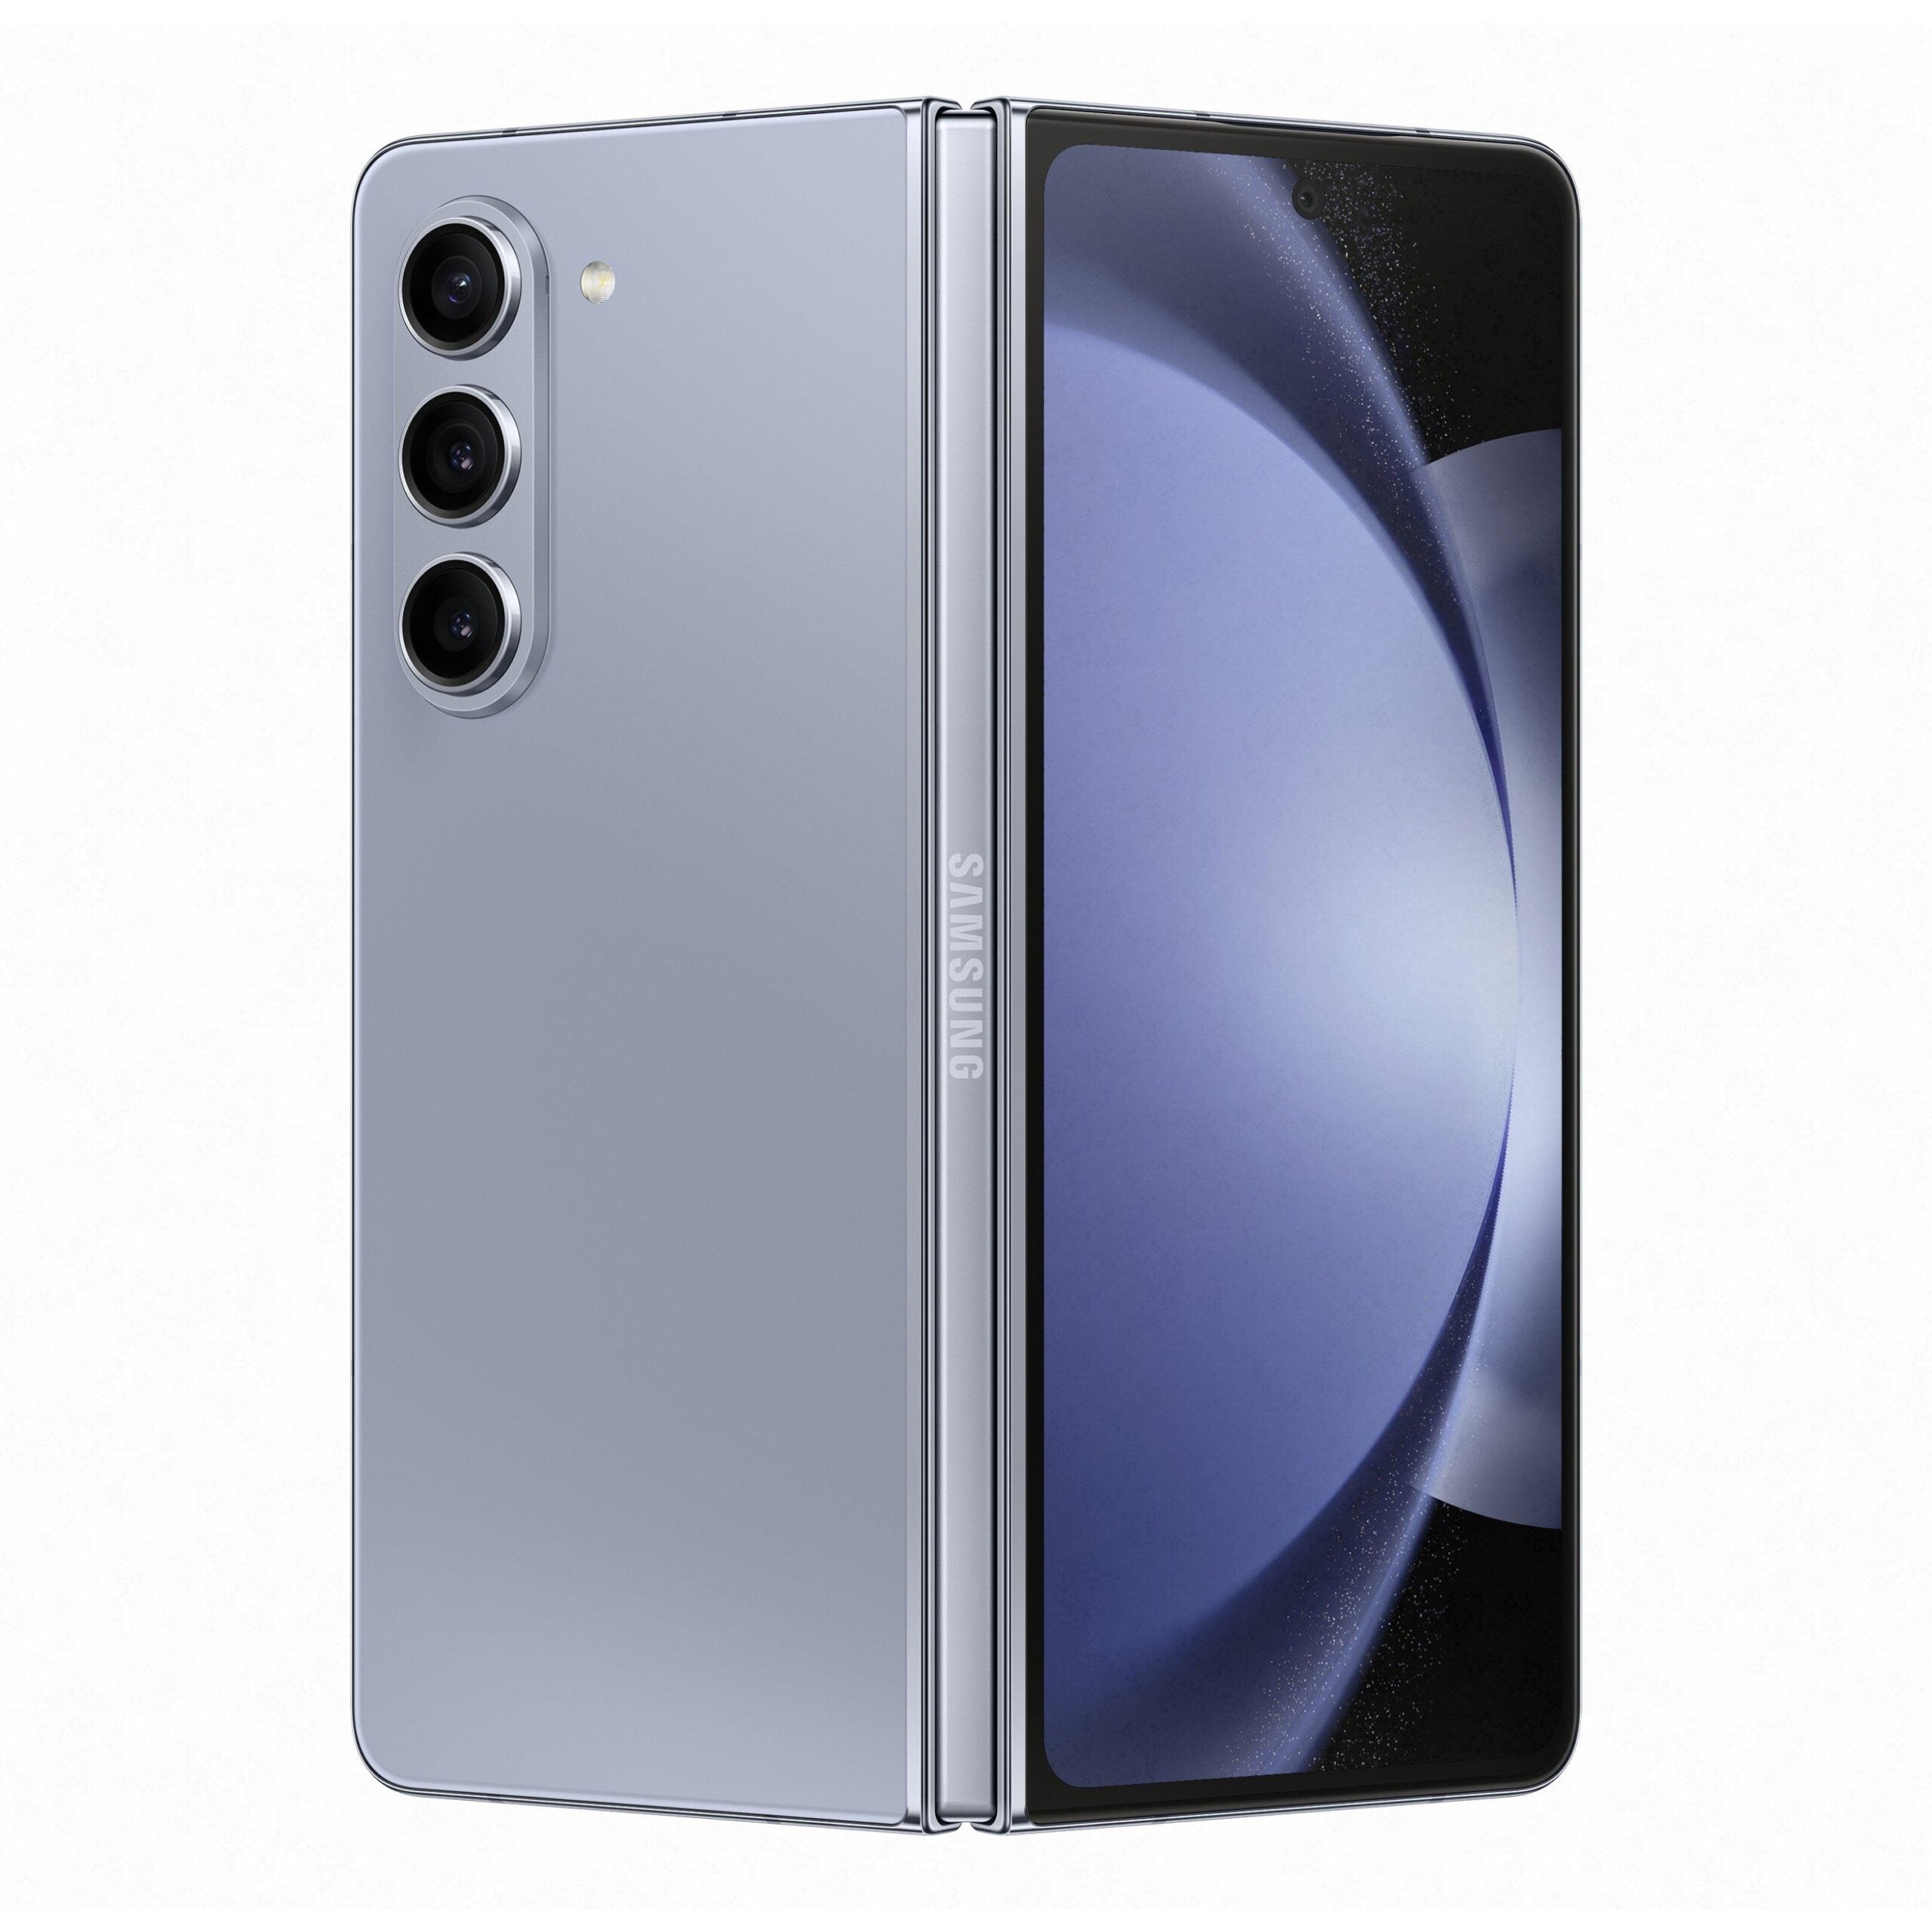 Samsung Galaxy Z Fold 5 7.6-inch 12GB RAM 256GB 5G Phone - Icy Blue